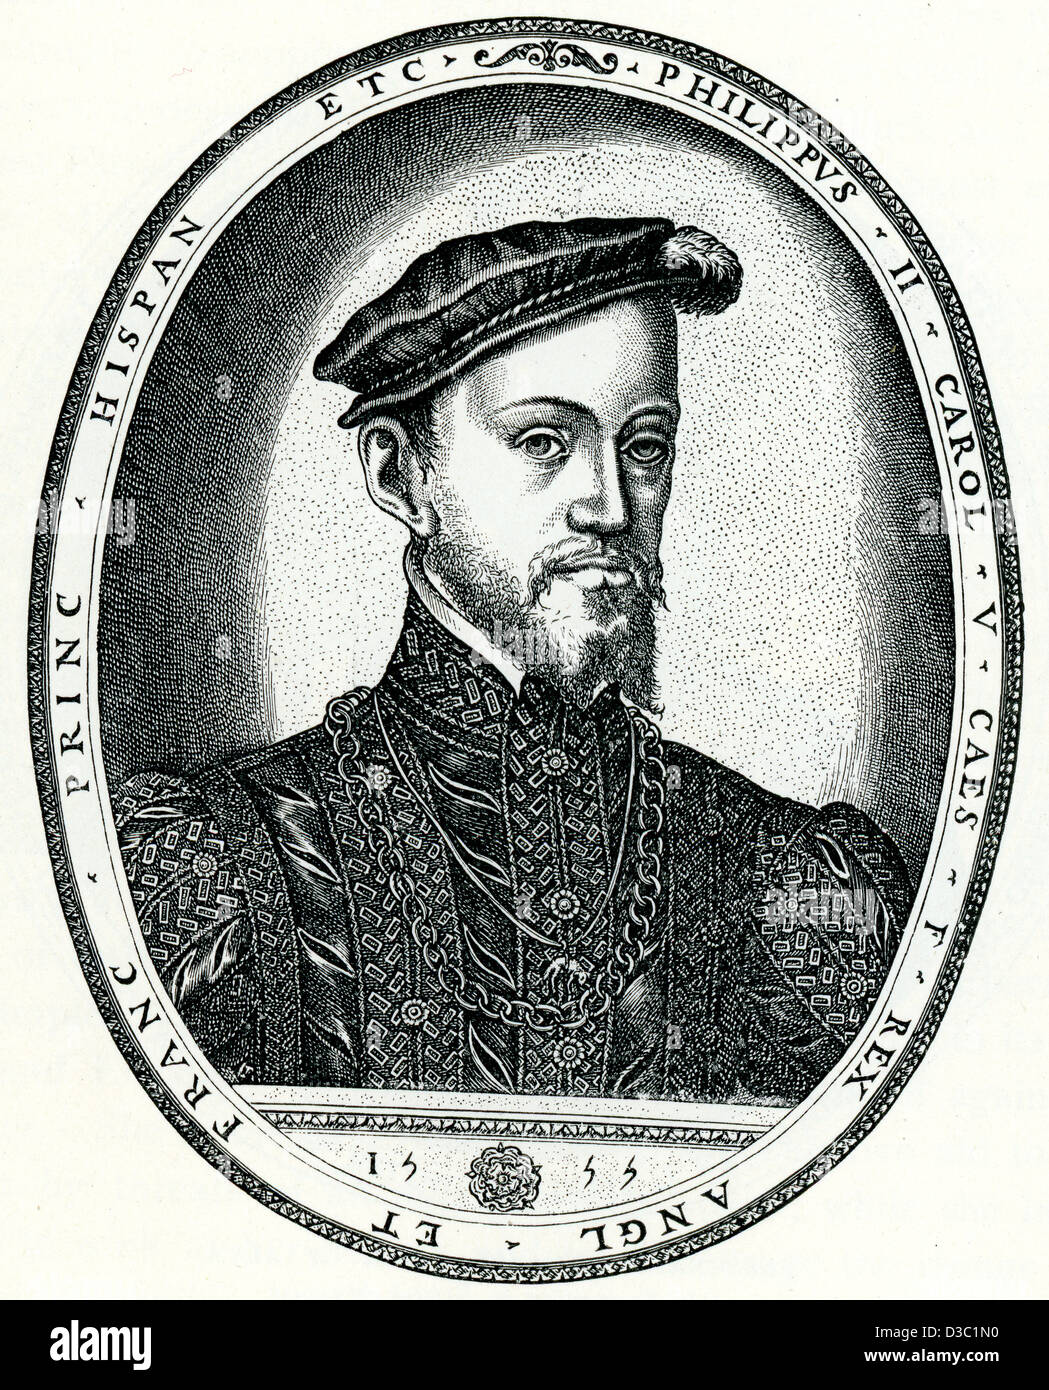 Vintage engraving of King Philip II of Spain Stock Photo